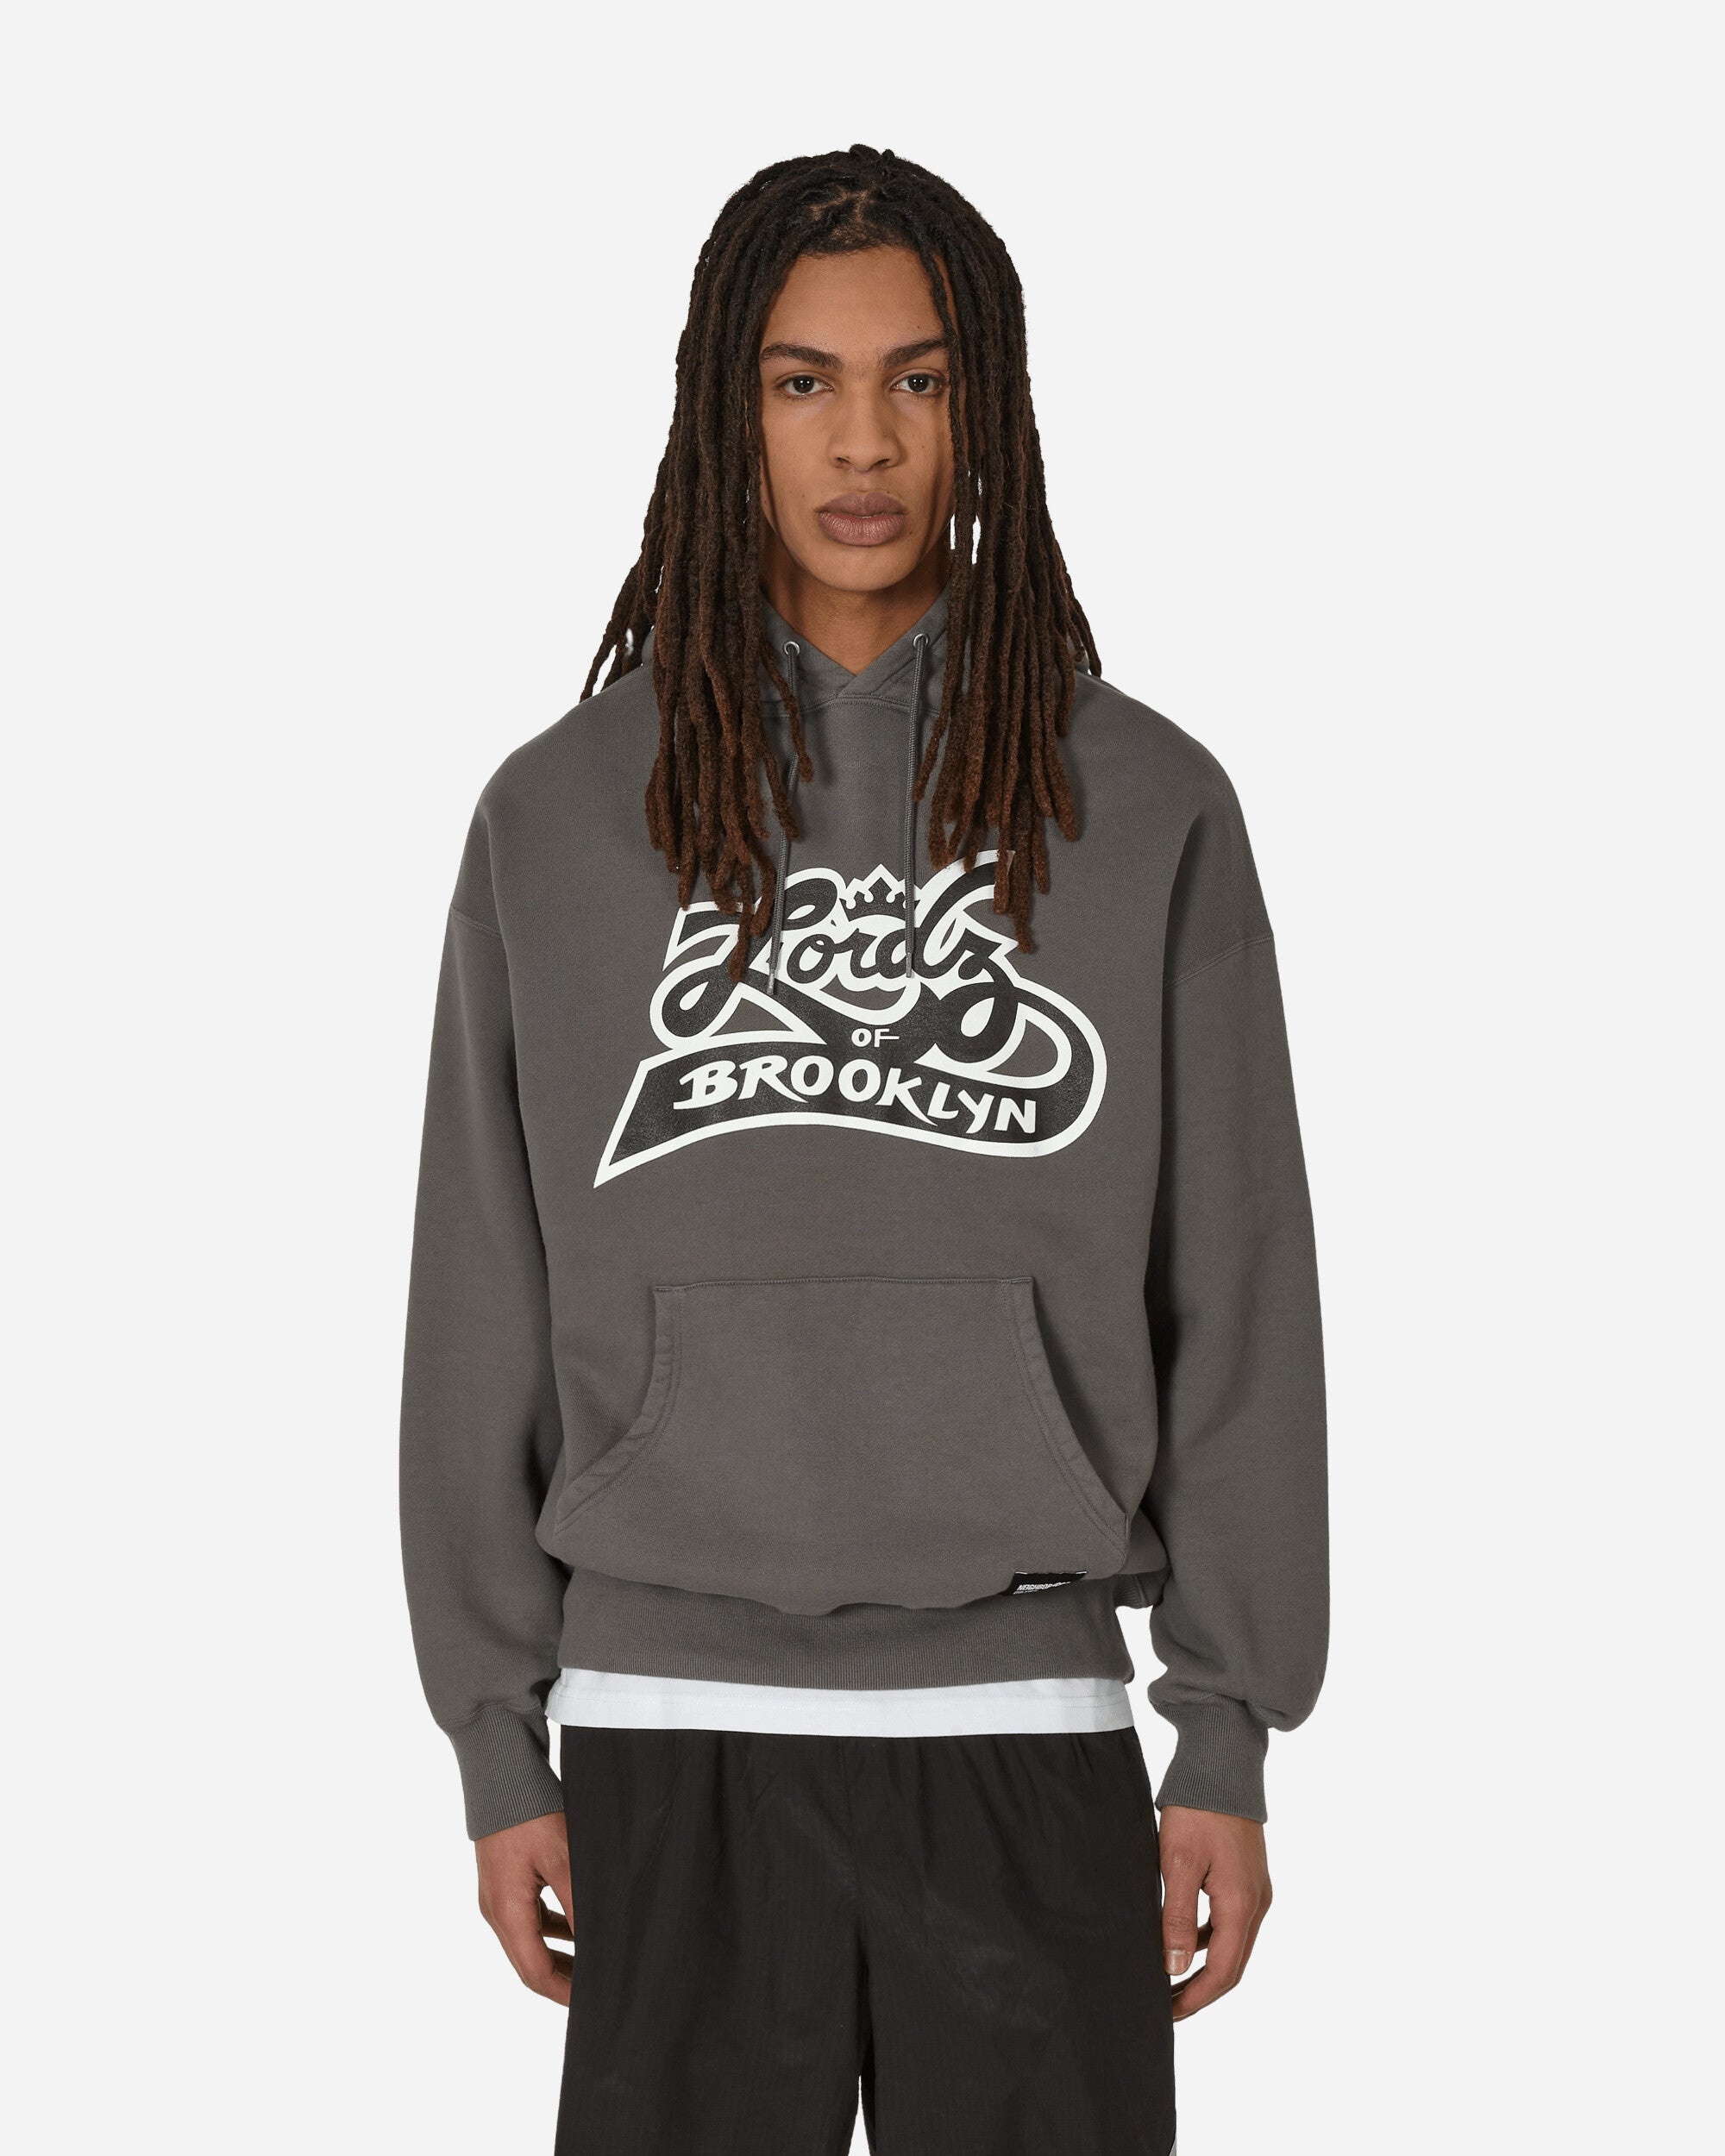 Lordz Of Brooklyn Hooded Sweatshirt Charcoal - 1